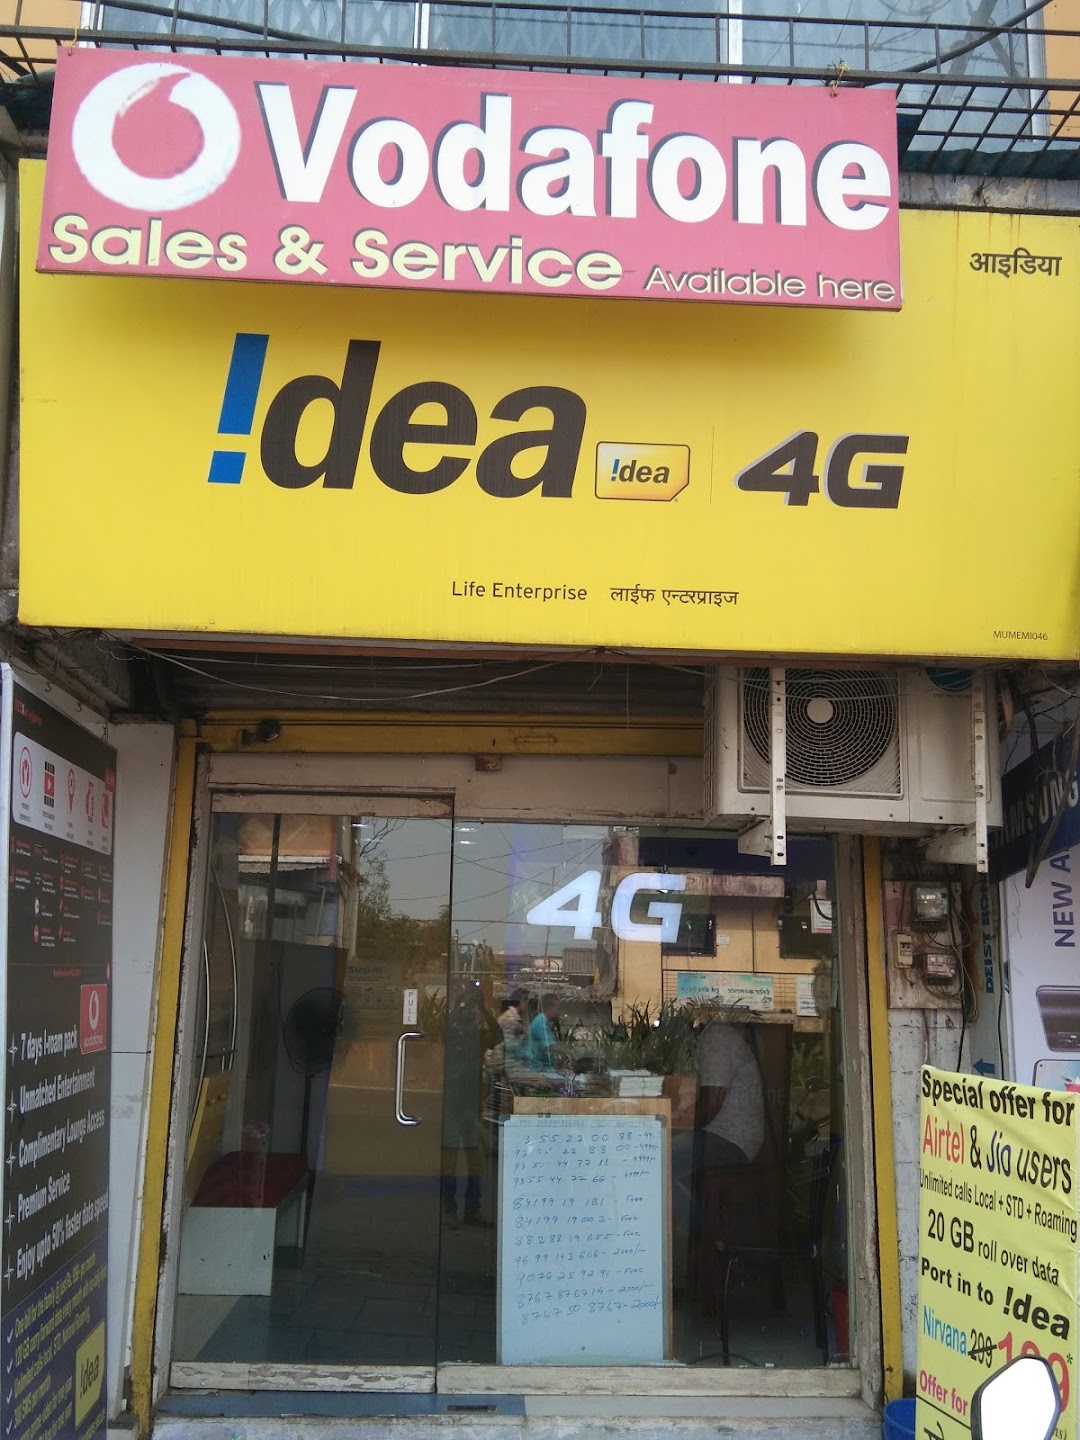 Vodafone Idea Ltd